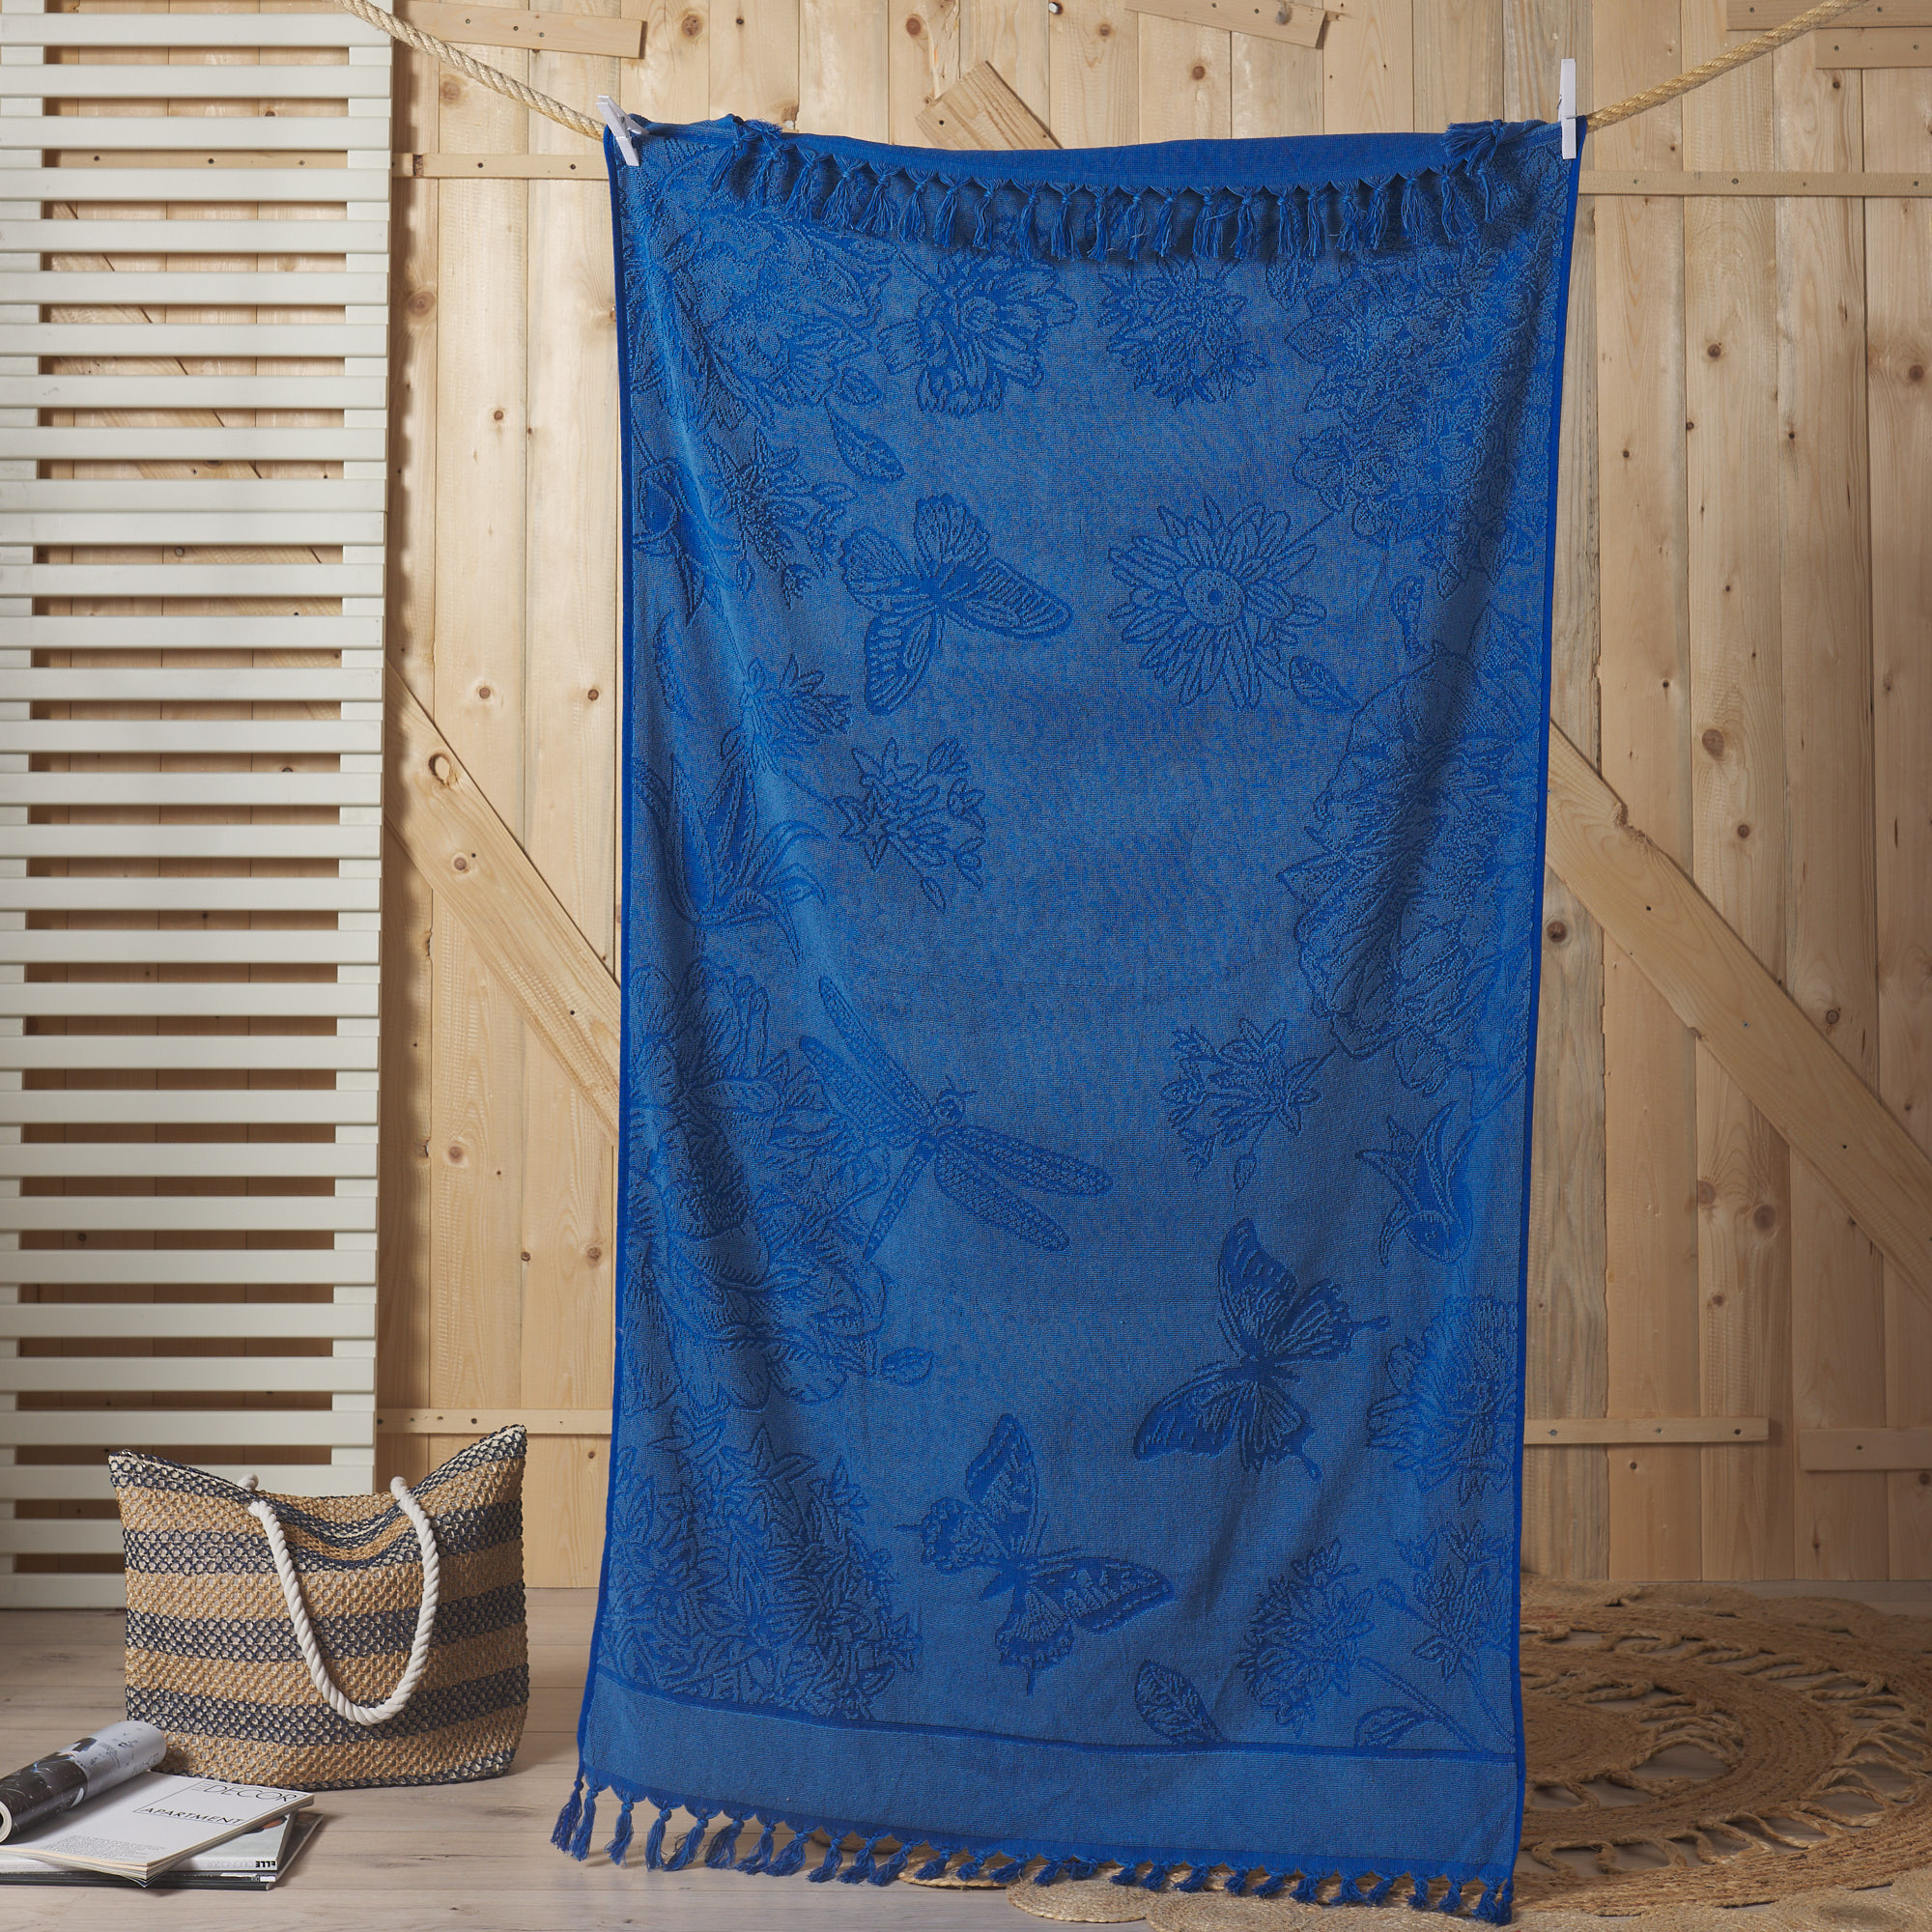 Пляжное полотенце с микроспонжем "Бабочка" Новое blu capri Maè